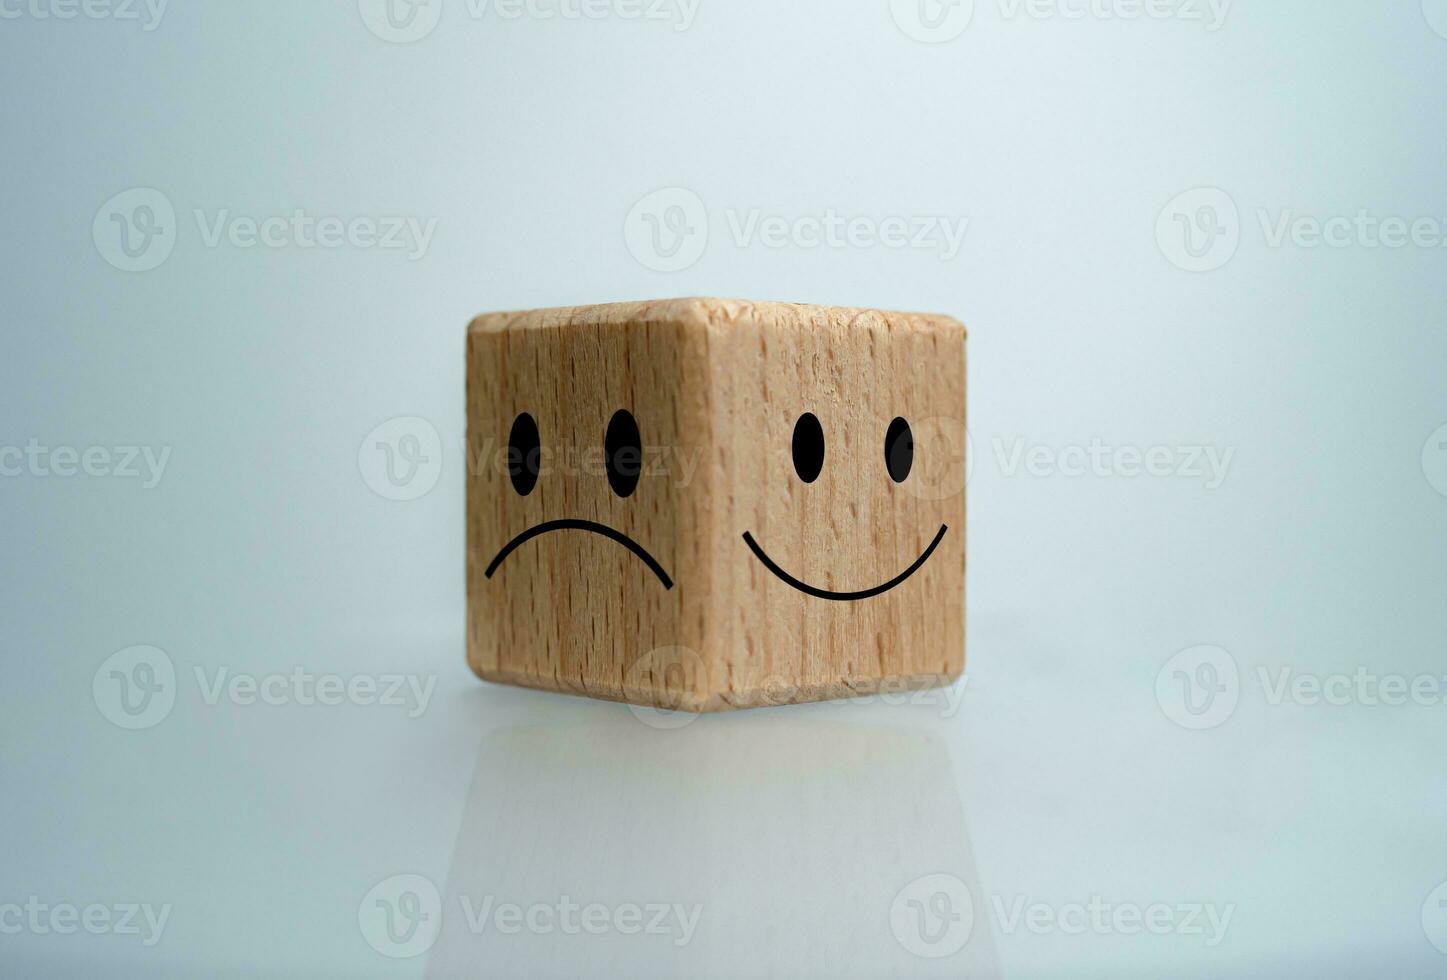 mentaal Gezondheid en emotioneel staat concept, glimlach gezicht en verdrietig gezicht Aan houten blok kubus voor positief manier van denken selectie concept. foto